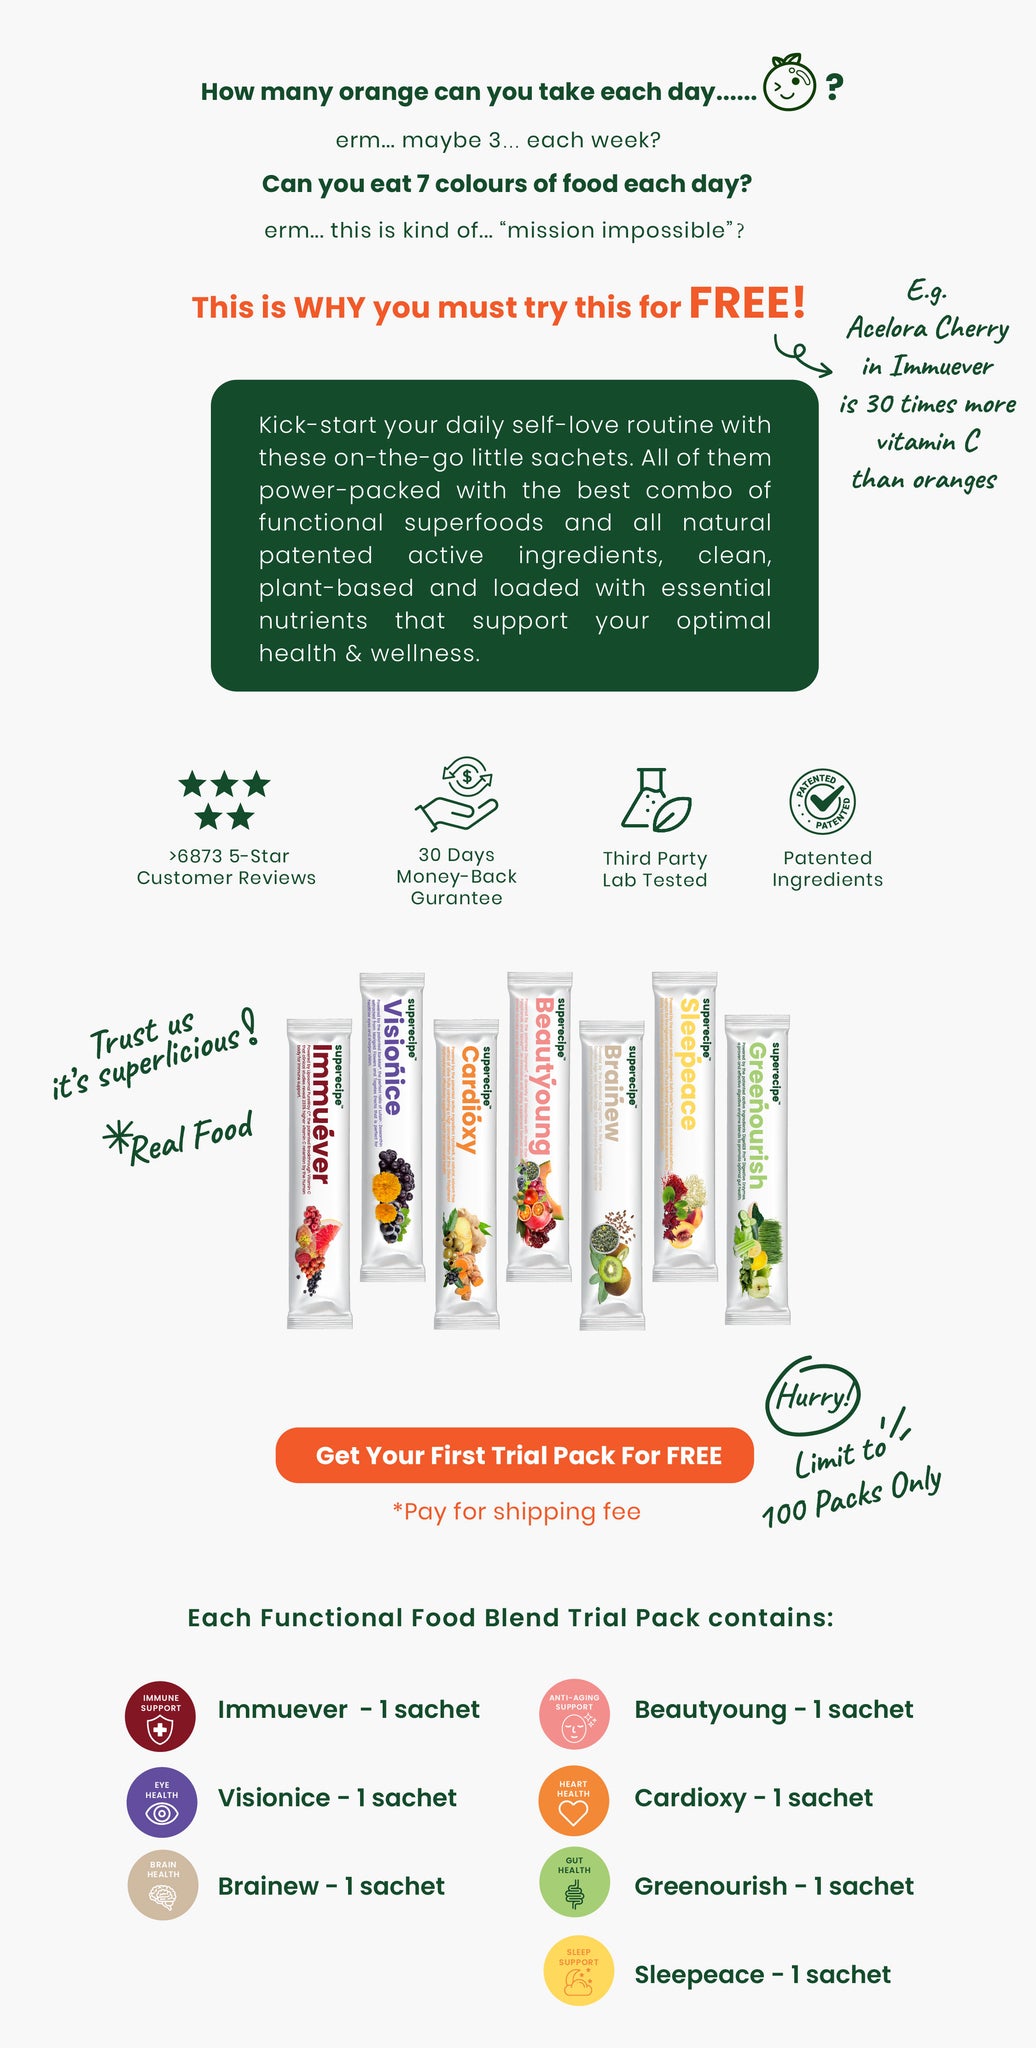 Free Functional Food Blend Trial Pack